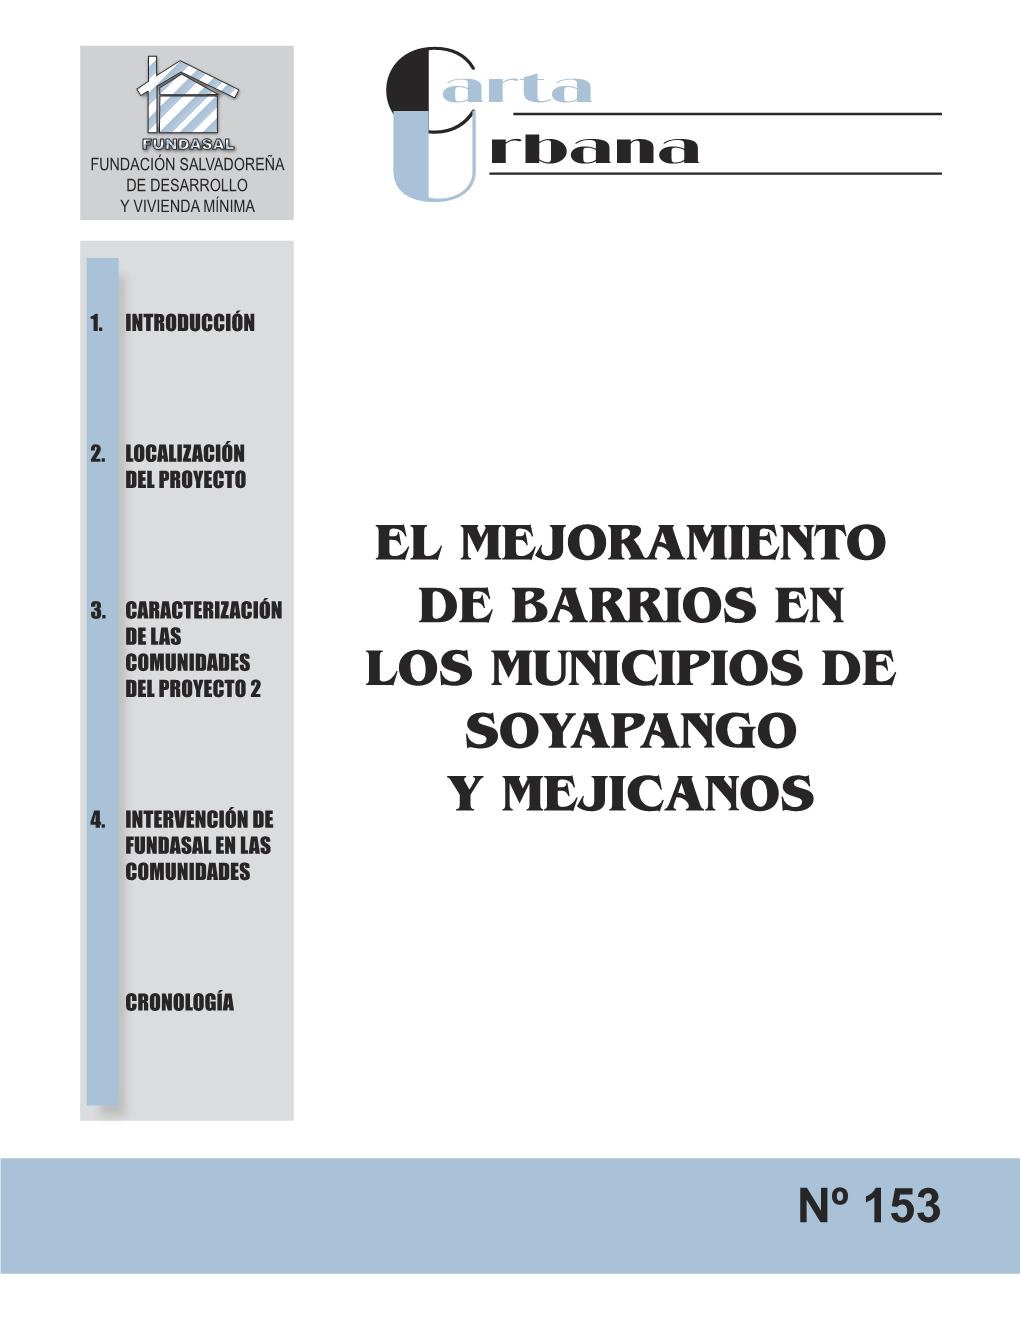 El Mejoramiento De Barrios En Los Municipios De Soyapango Y Mejicanos